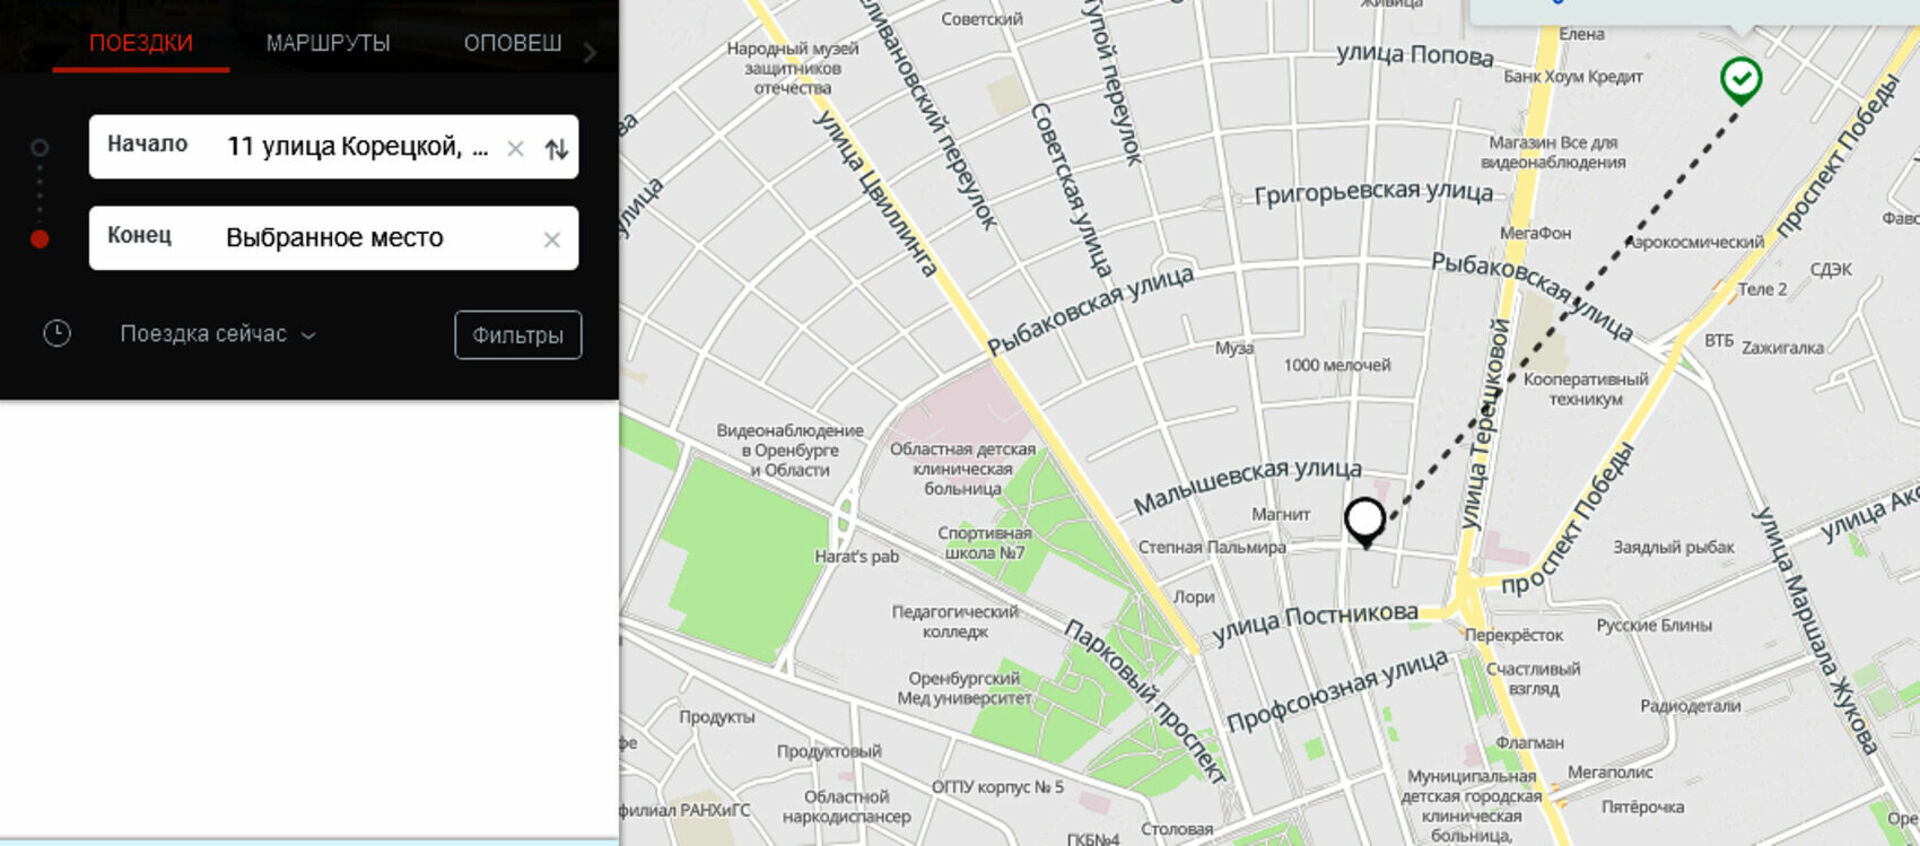 Отследить автобус хабаровск. Приложение для отслеживания автобусов. Карта отслеживания автобусов. Мониторинг общественного транспорта в Москве. Moovit транспортное приложение.